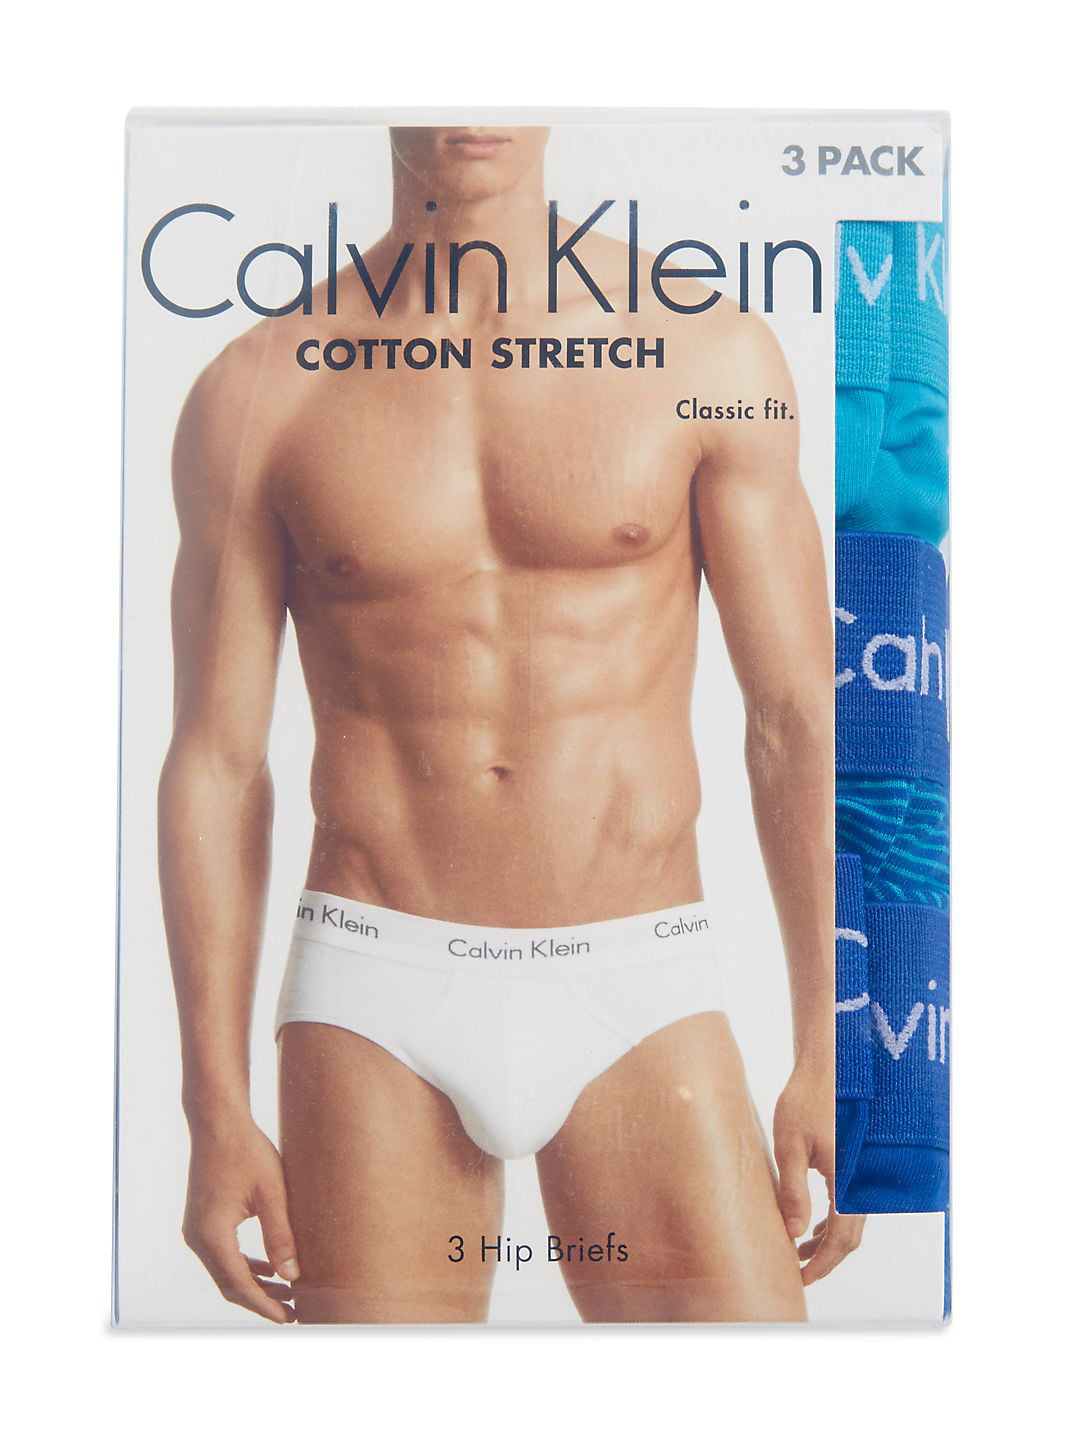 Calvin Klein Men's Cotton Stretch Hip Brief - 3 Pack, Black, Large -  